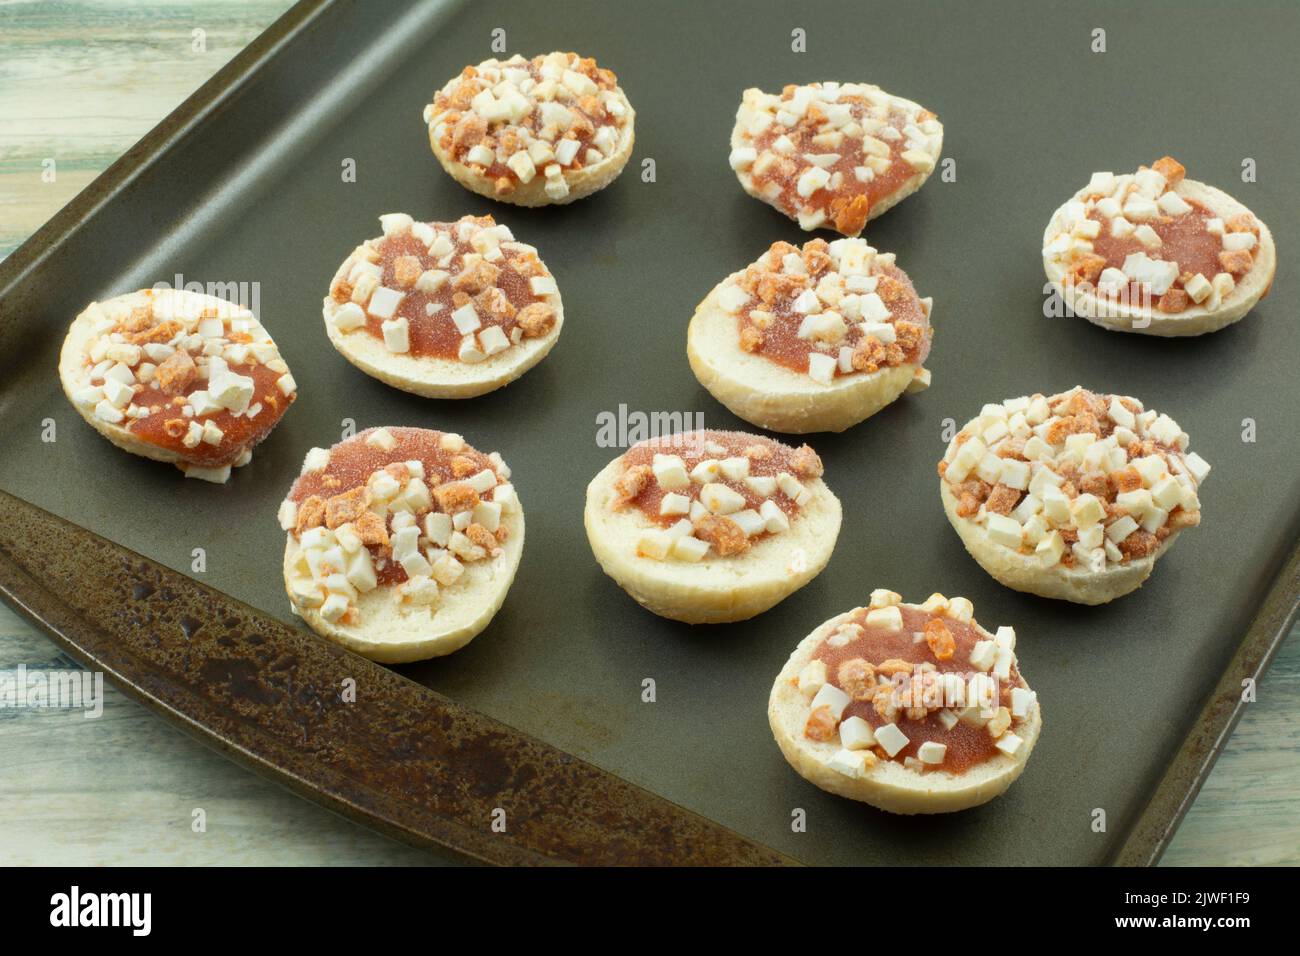 Gefrorene Mini-Pizza-Snack-Stücke in mundgroßer Größe mit Tomatensauce und Käsewürfeln auf Backblech Stockfoto